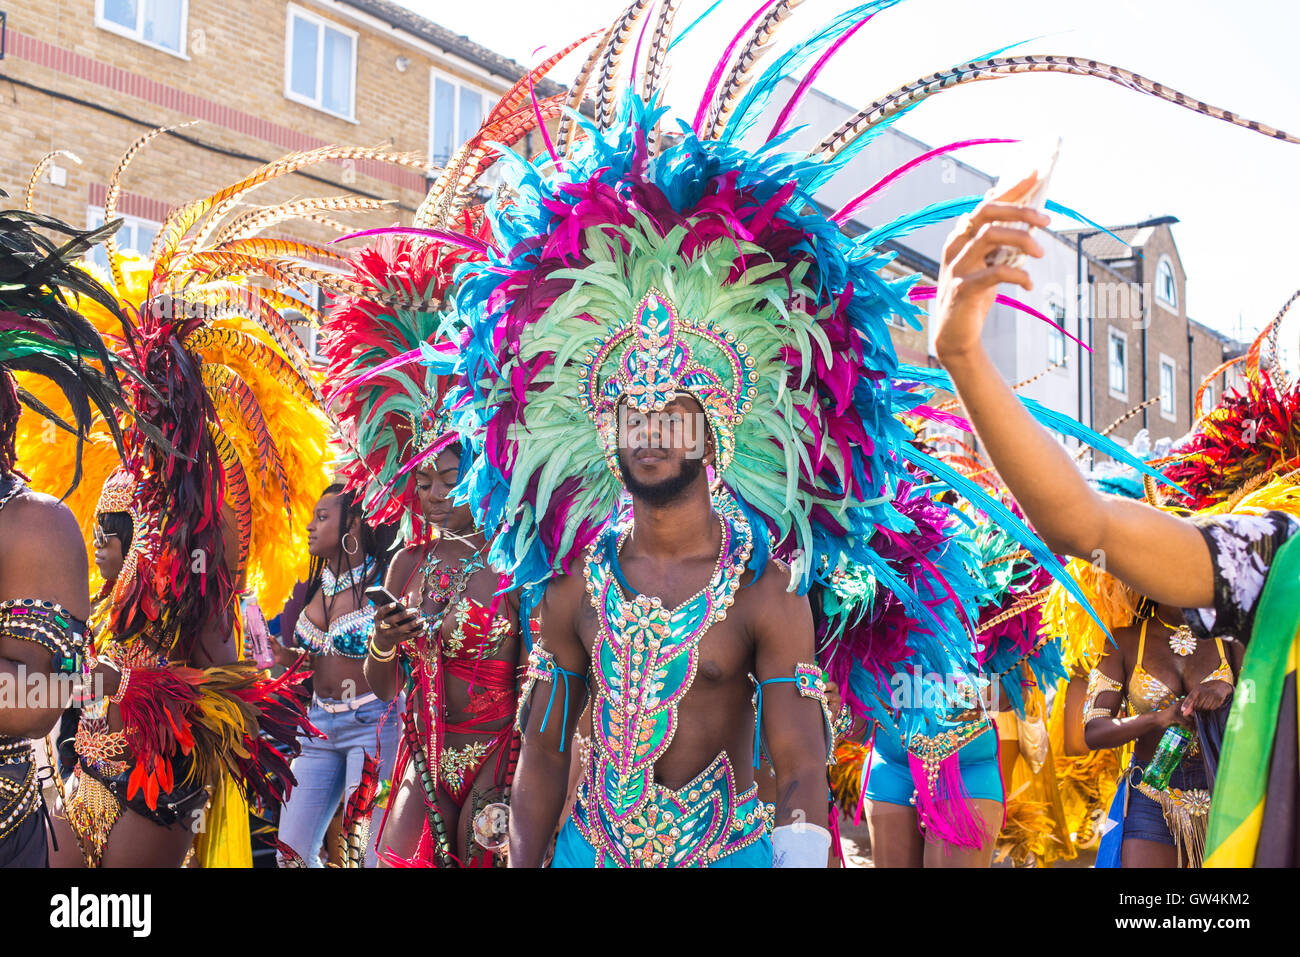 Hackney, Londres, Royaume-Uni. 11 septembre 2016. Les artistes interprètes ou exécutants pendant le défilé habillés avec des costumes flamboyants au cours de la London Carnival 2016 dans Ridley Road. Credit : Nicola Ferrari/Alamy Live News. Banque D'Images